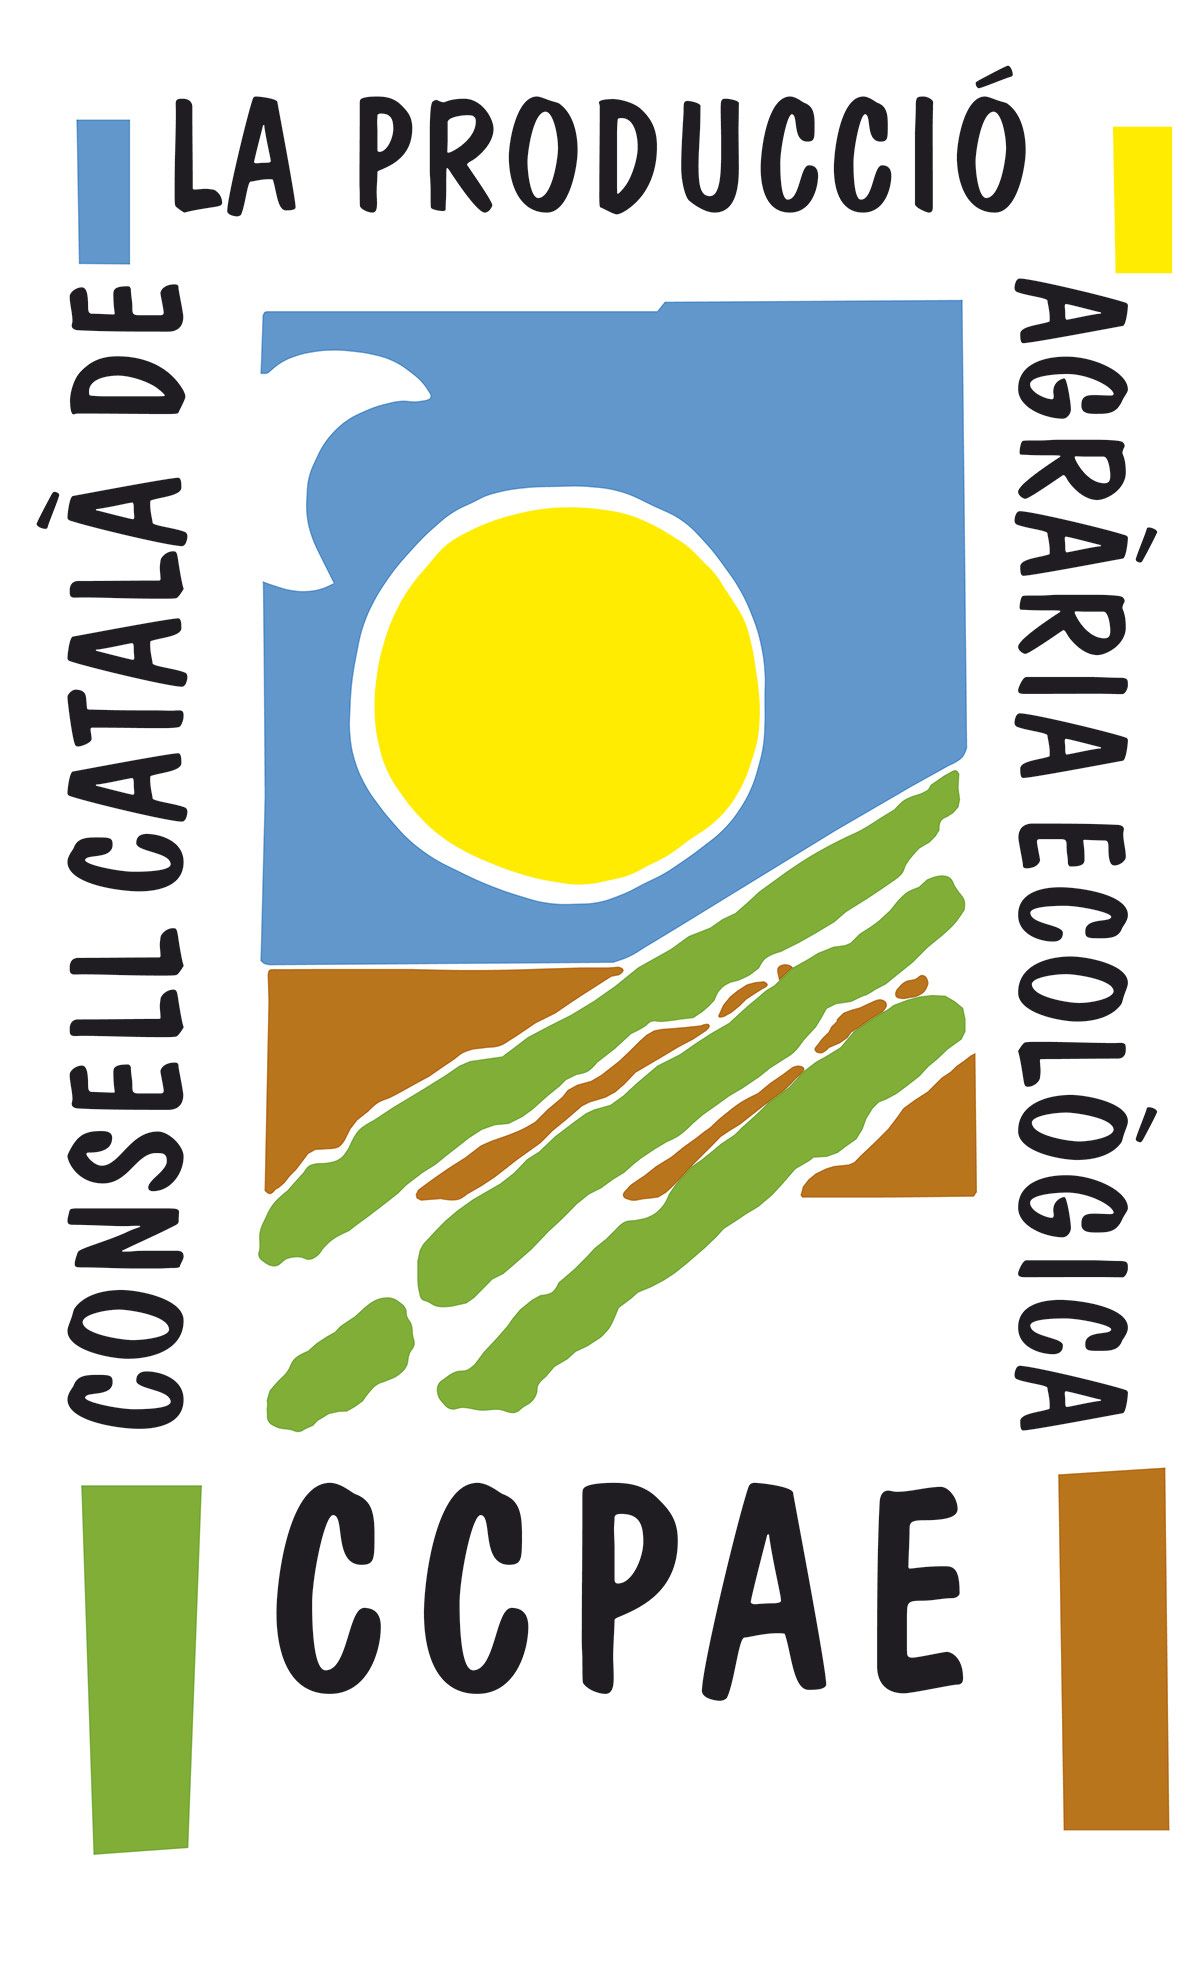 Producción Agraria Ecológica (CCPAE)